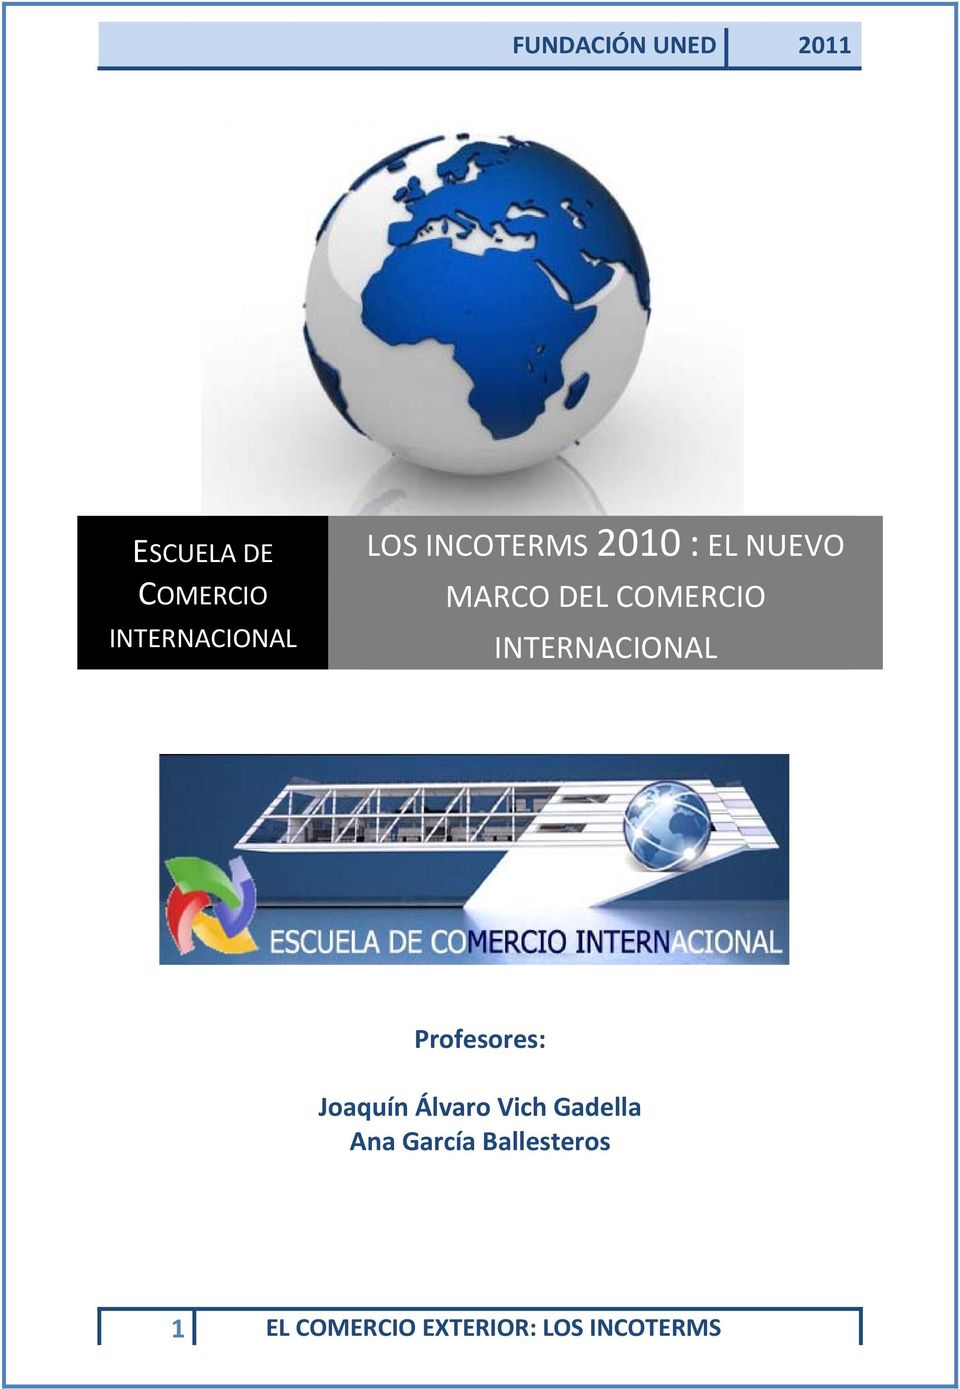 INTERNACIONAL Profesores: Joaquín Álvaro Vich Gadella